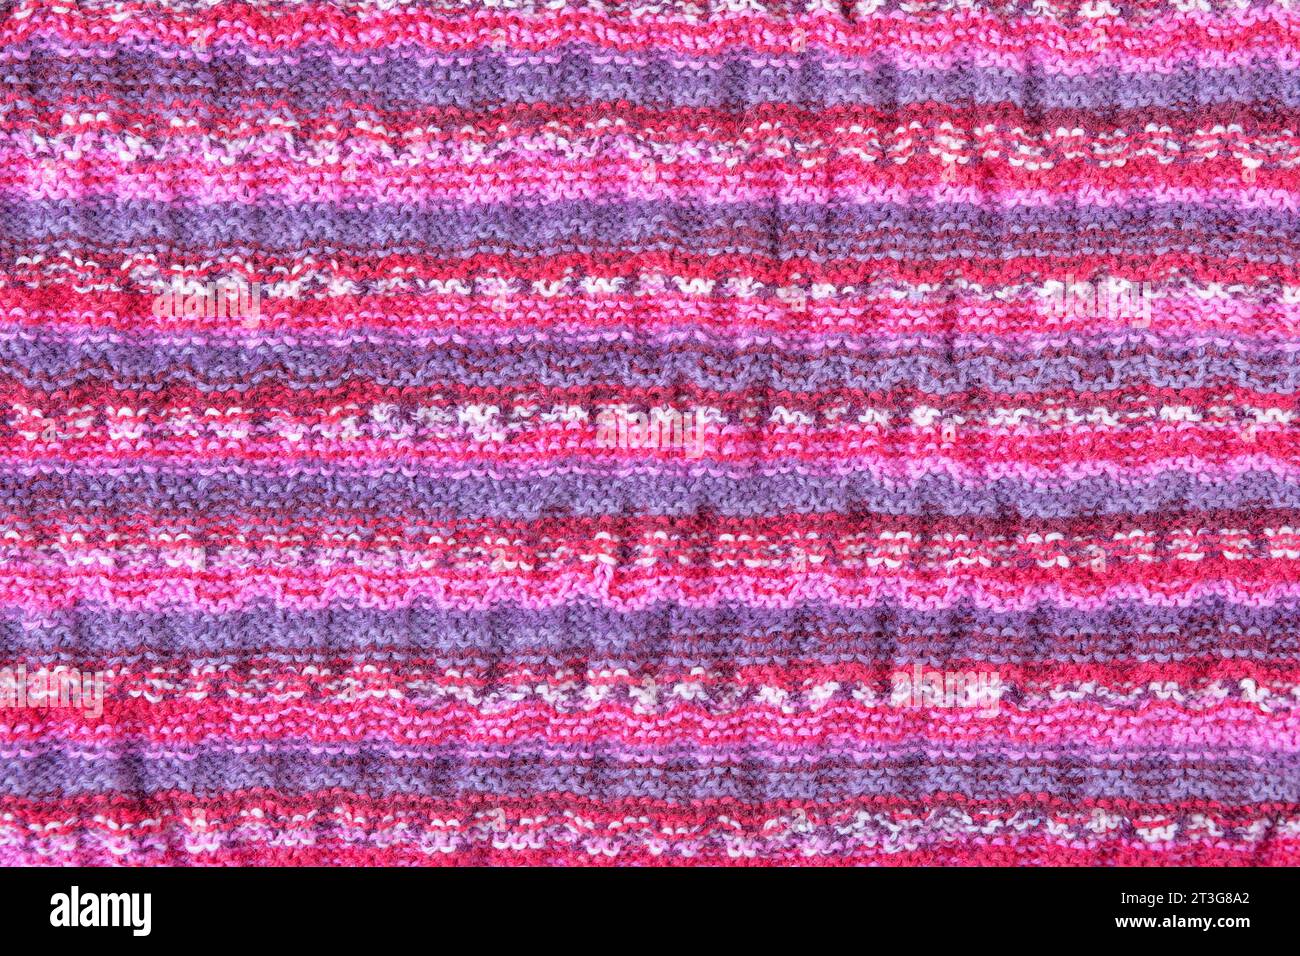 Sfondo colorato a maglia astratta. Motivo ondulato di fili di maglia rosa, blu, giallo e viola. Primo piano di una coperta a maglia. Copia spazio Foto Stock